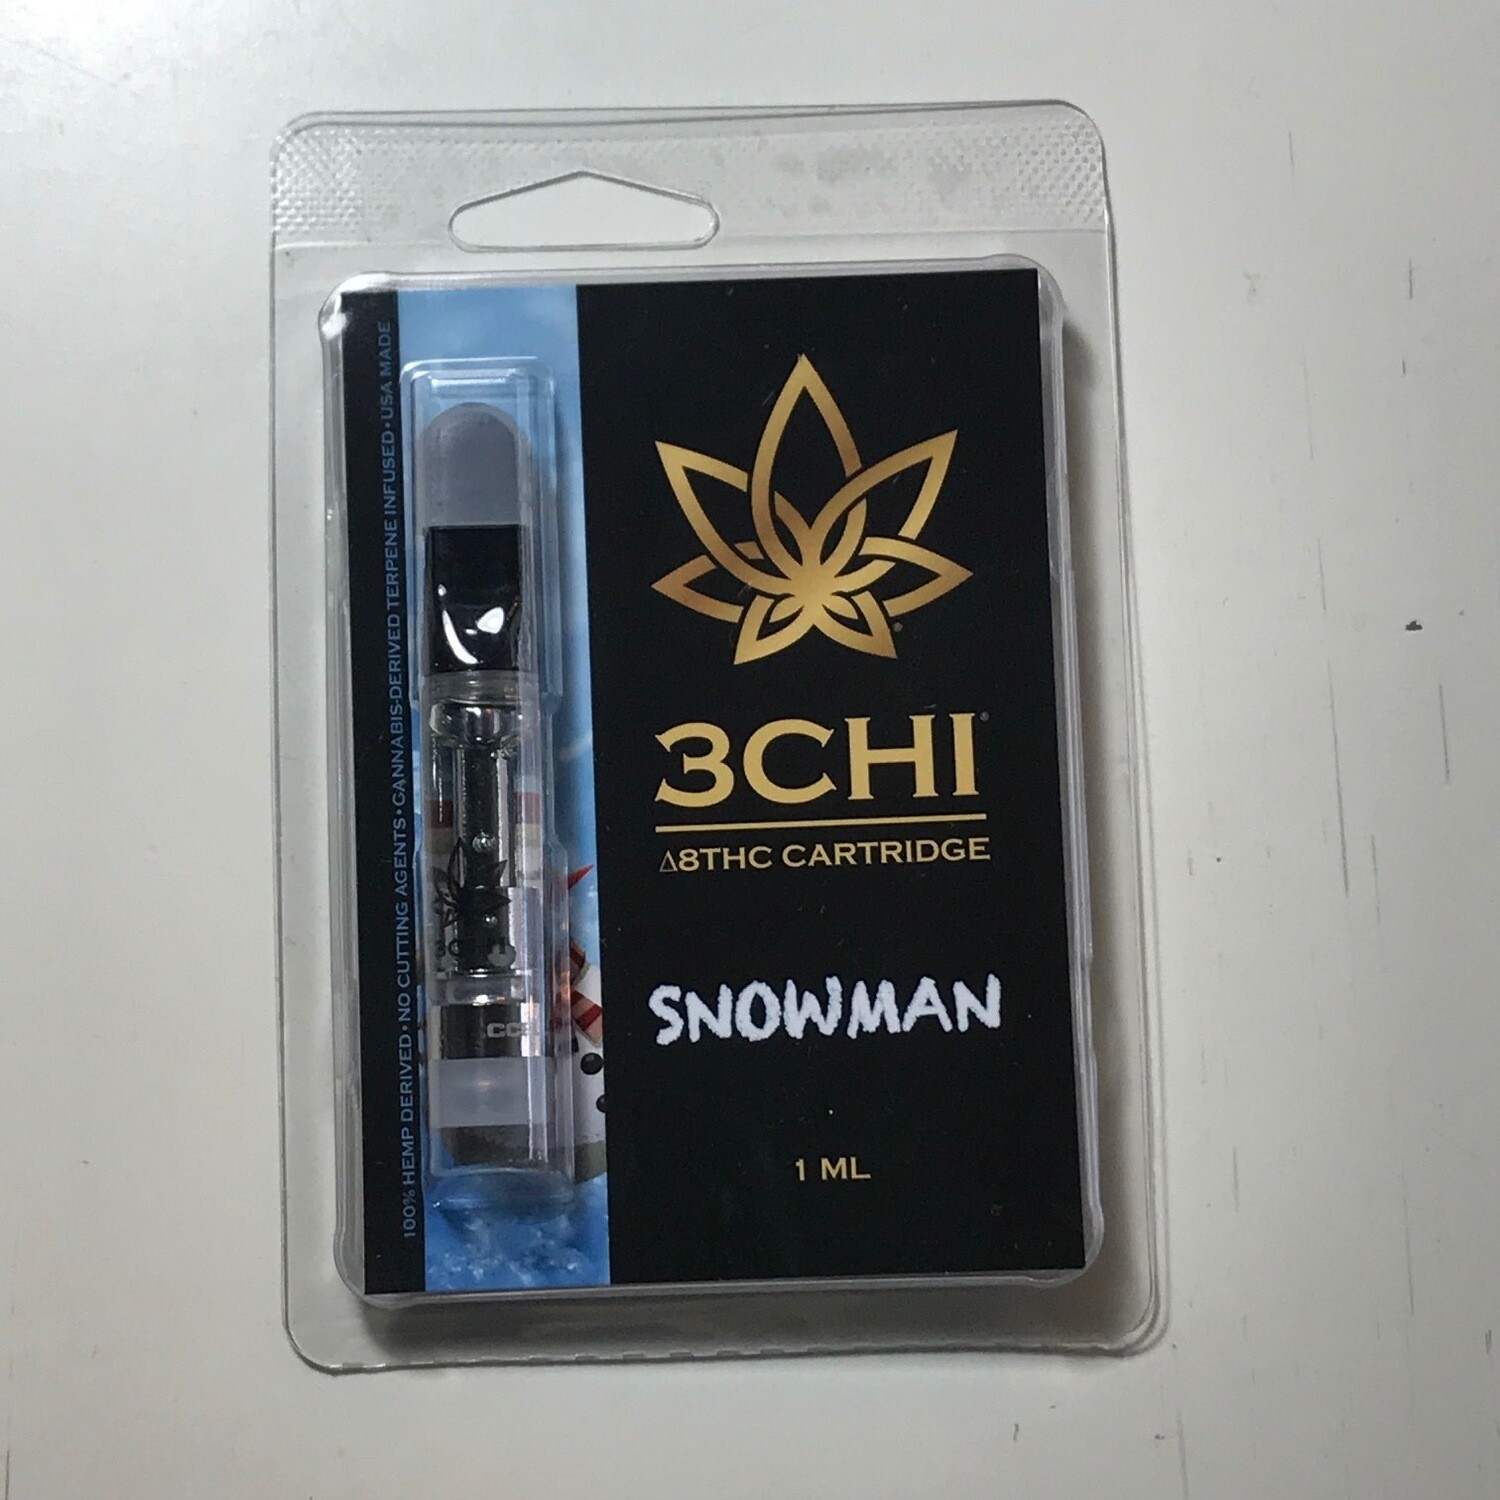 3CHI 950mg Delta8 Snowman 1mL Cartridge